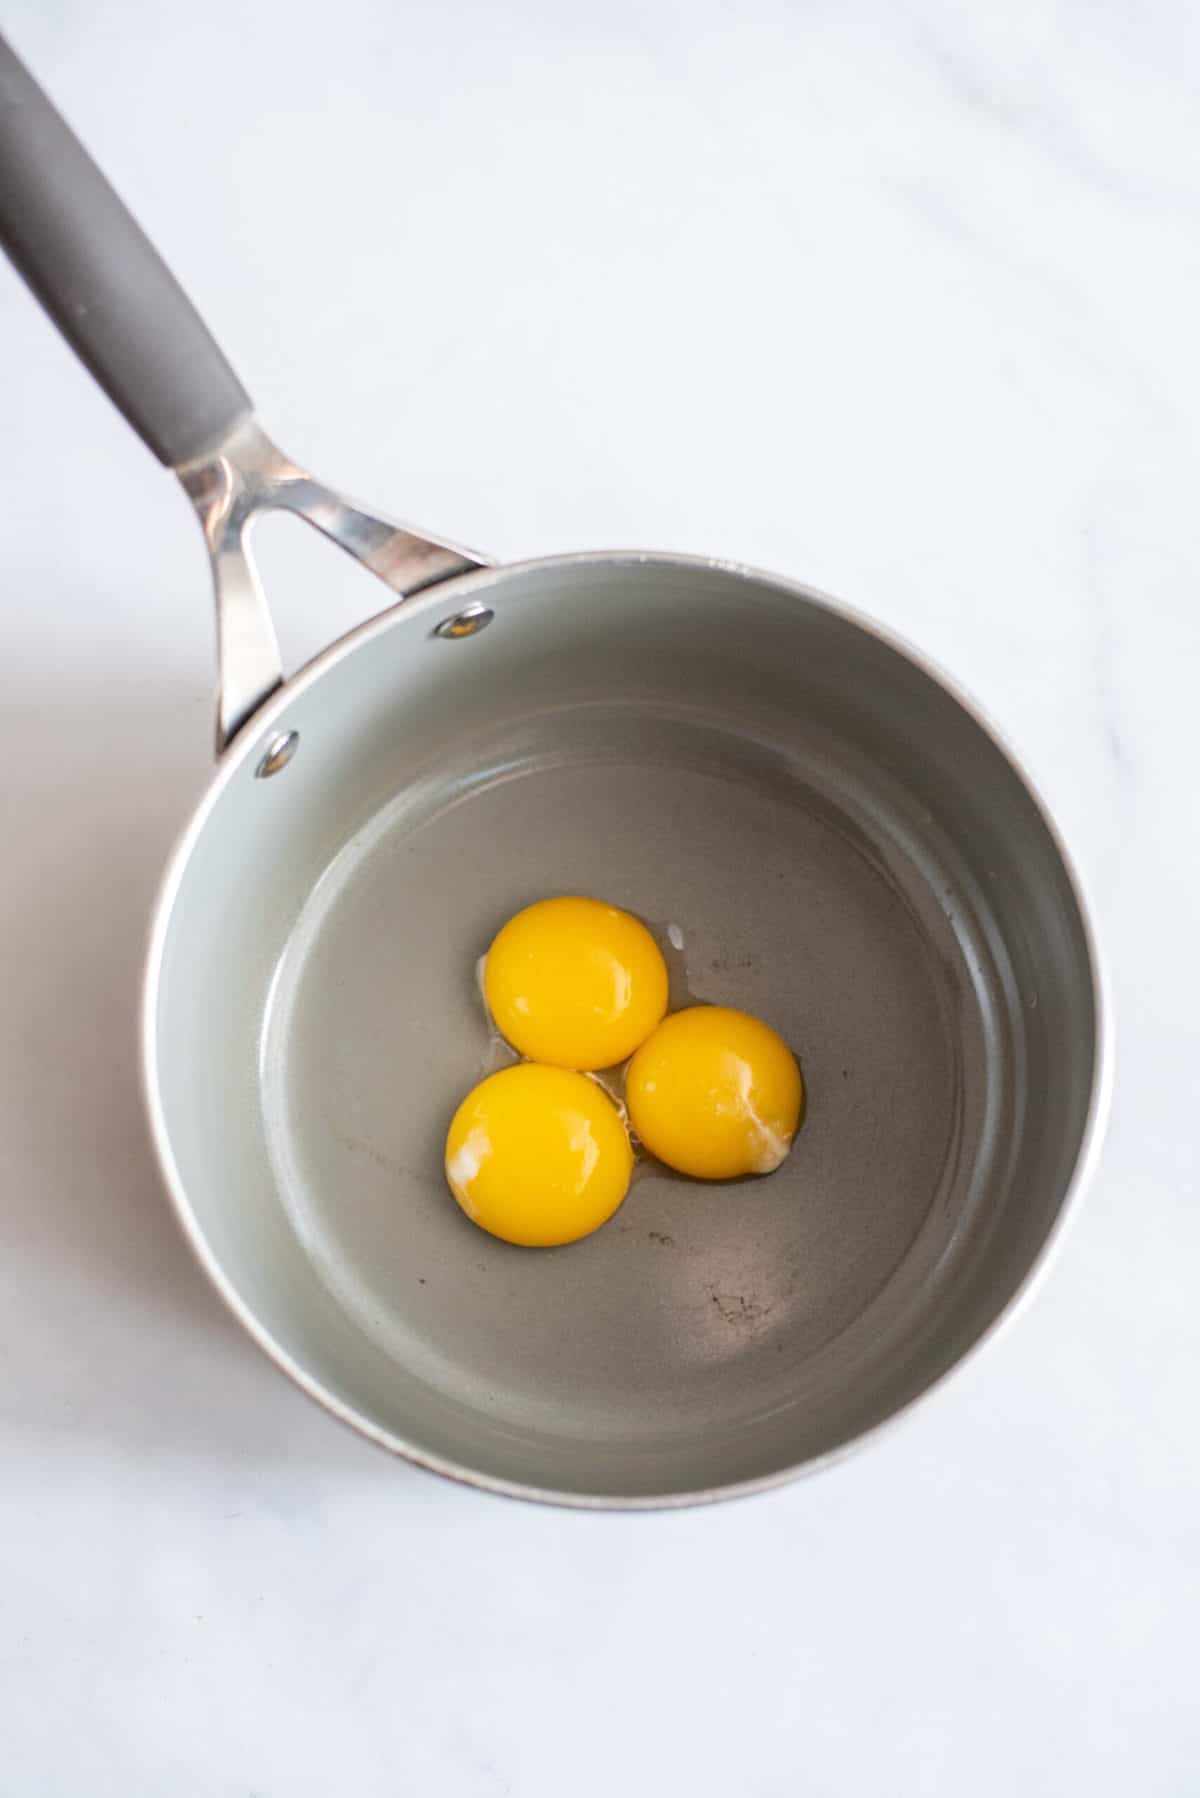 Egg yolks in saucepan.